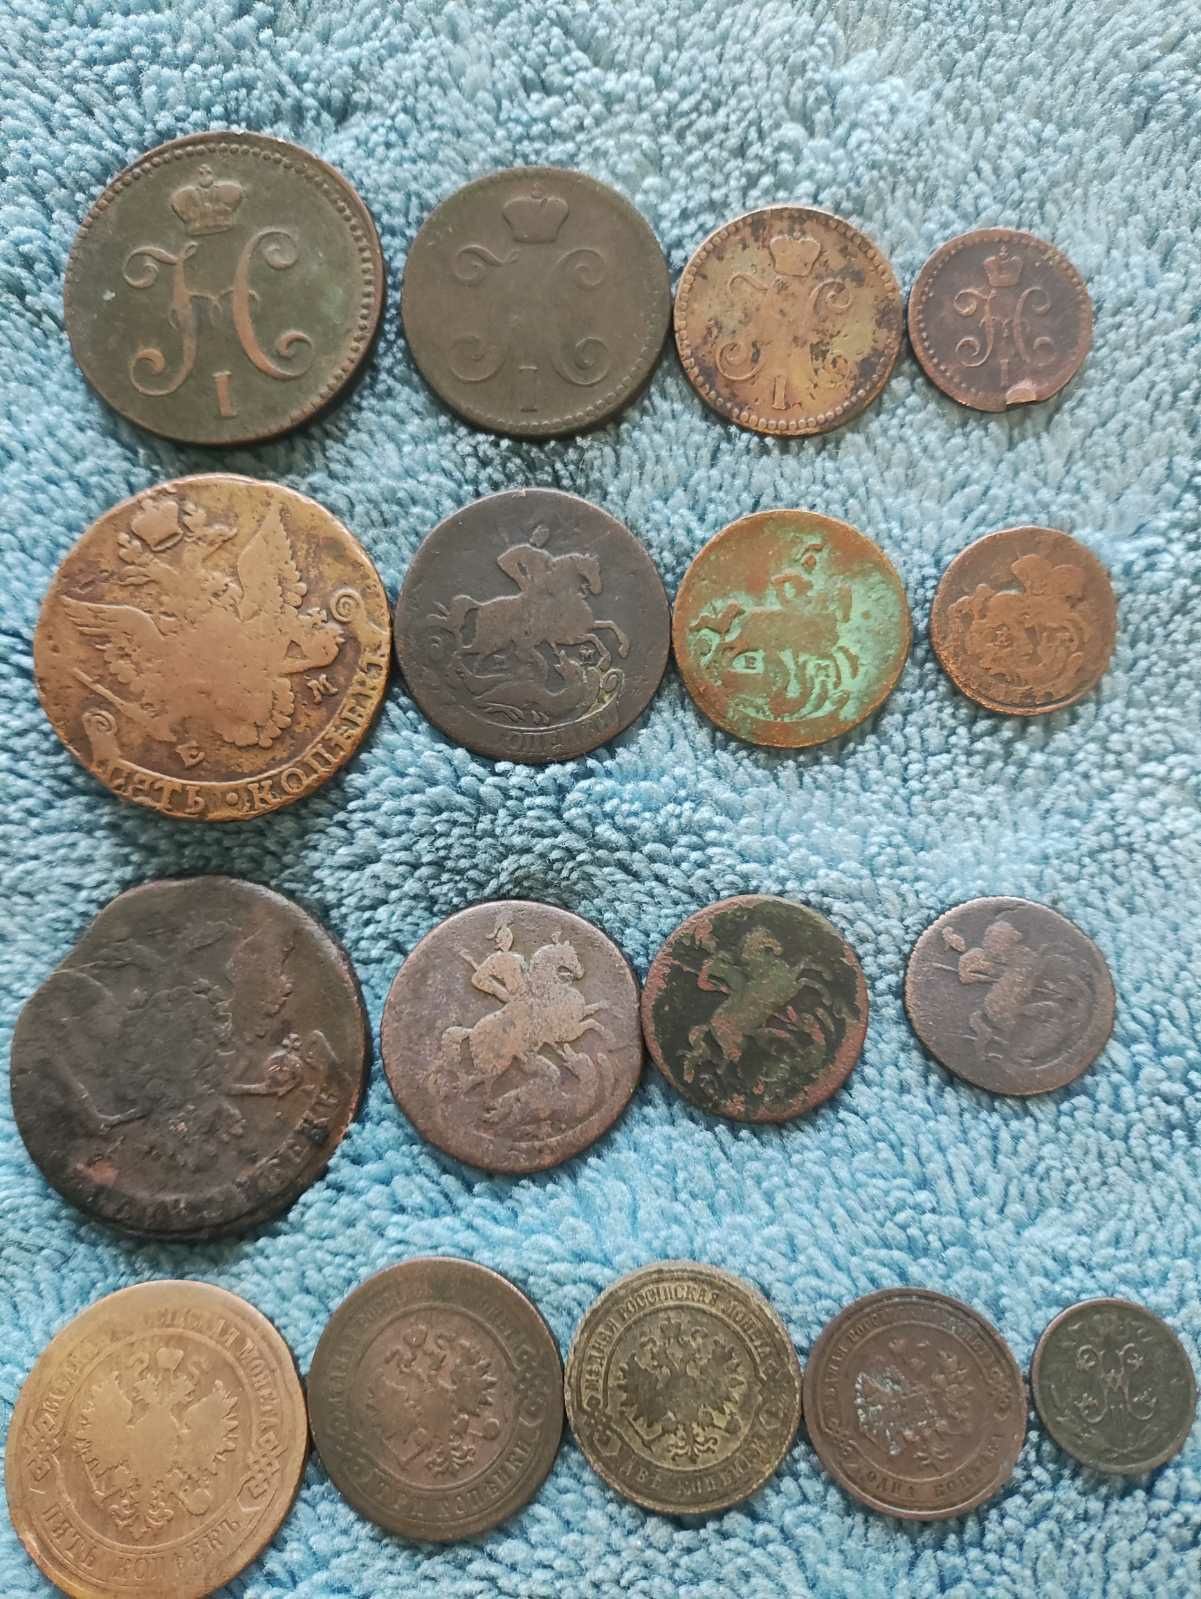 Продам монеты от чешуек и дельфинов до советов 61 года